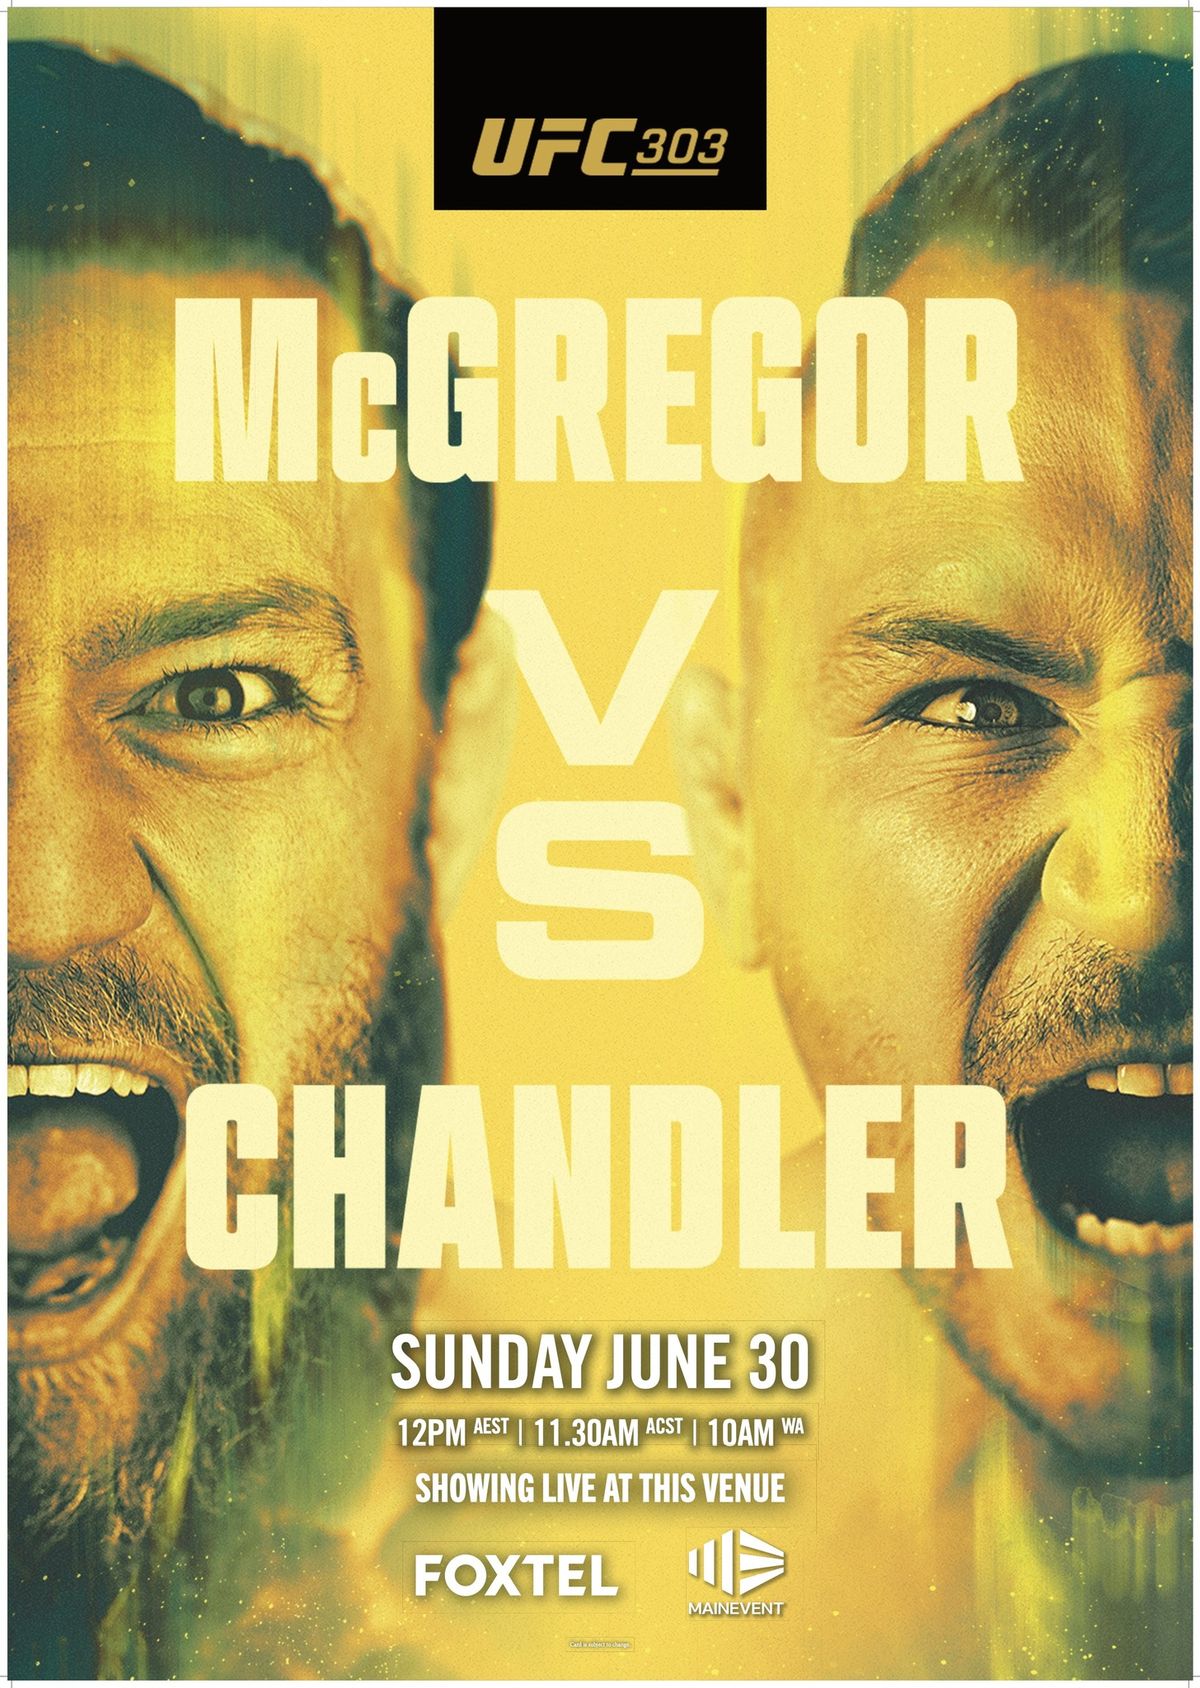 UFC303 - McGregor VS Chandler